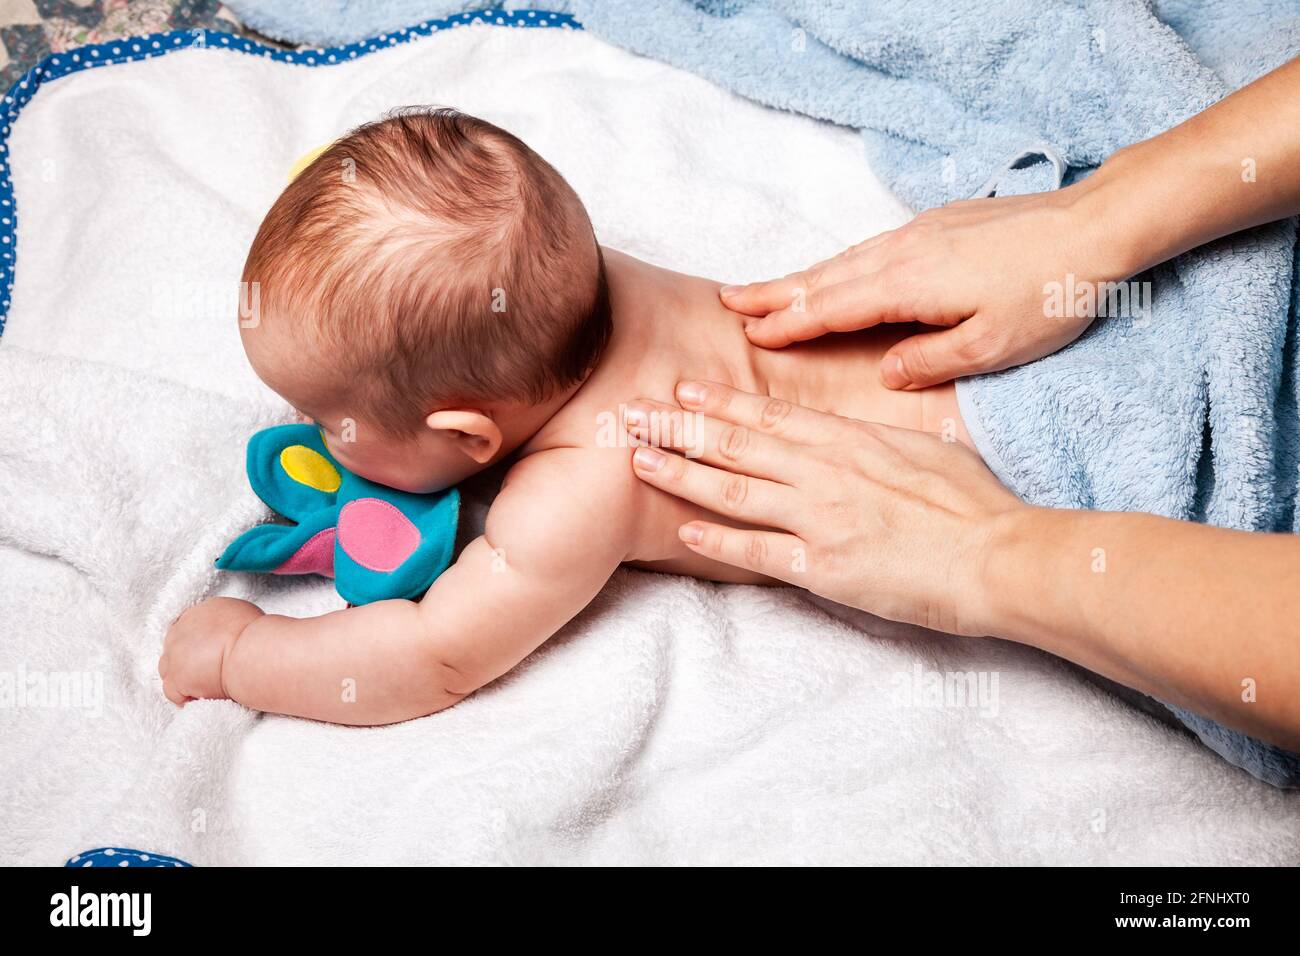 Bébé de cinq mois recevant la thérapie de massage à la maison pendant le verrouillage. Un thérapeute manuel ostéopathique ou chiropractique manipule le dos de l'enfant Banque D'Images